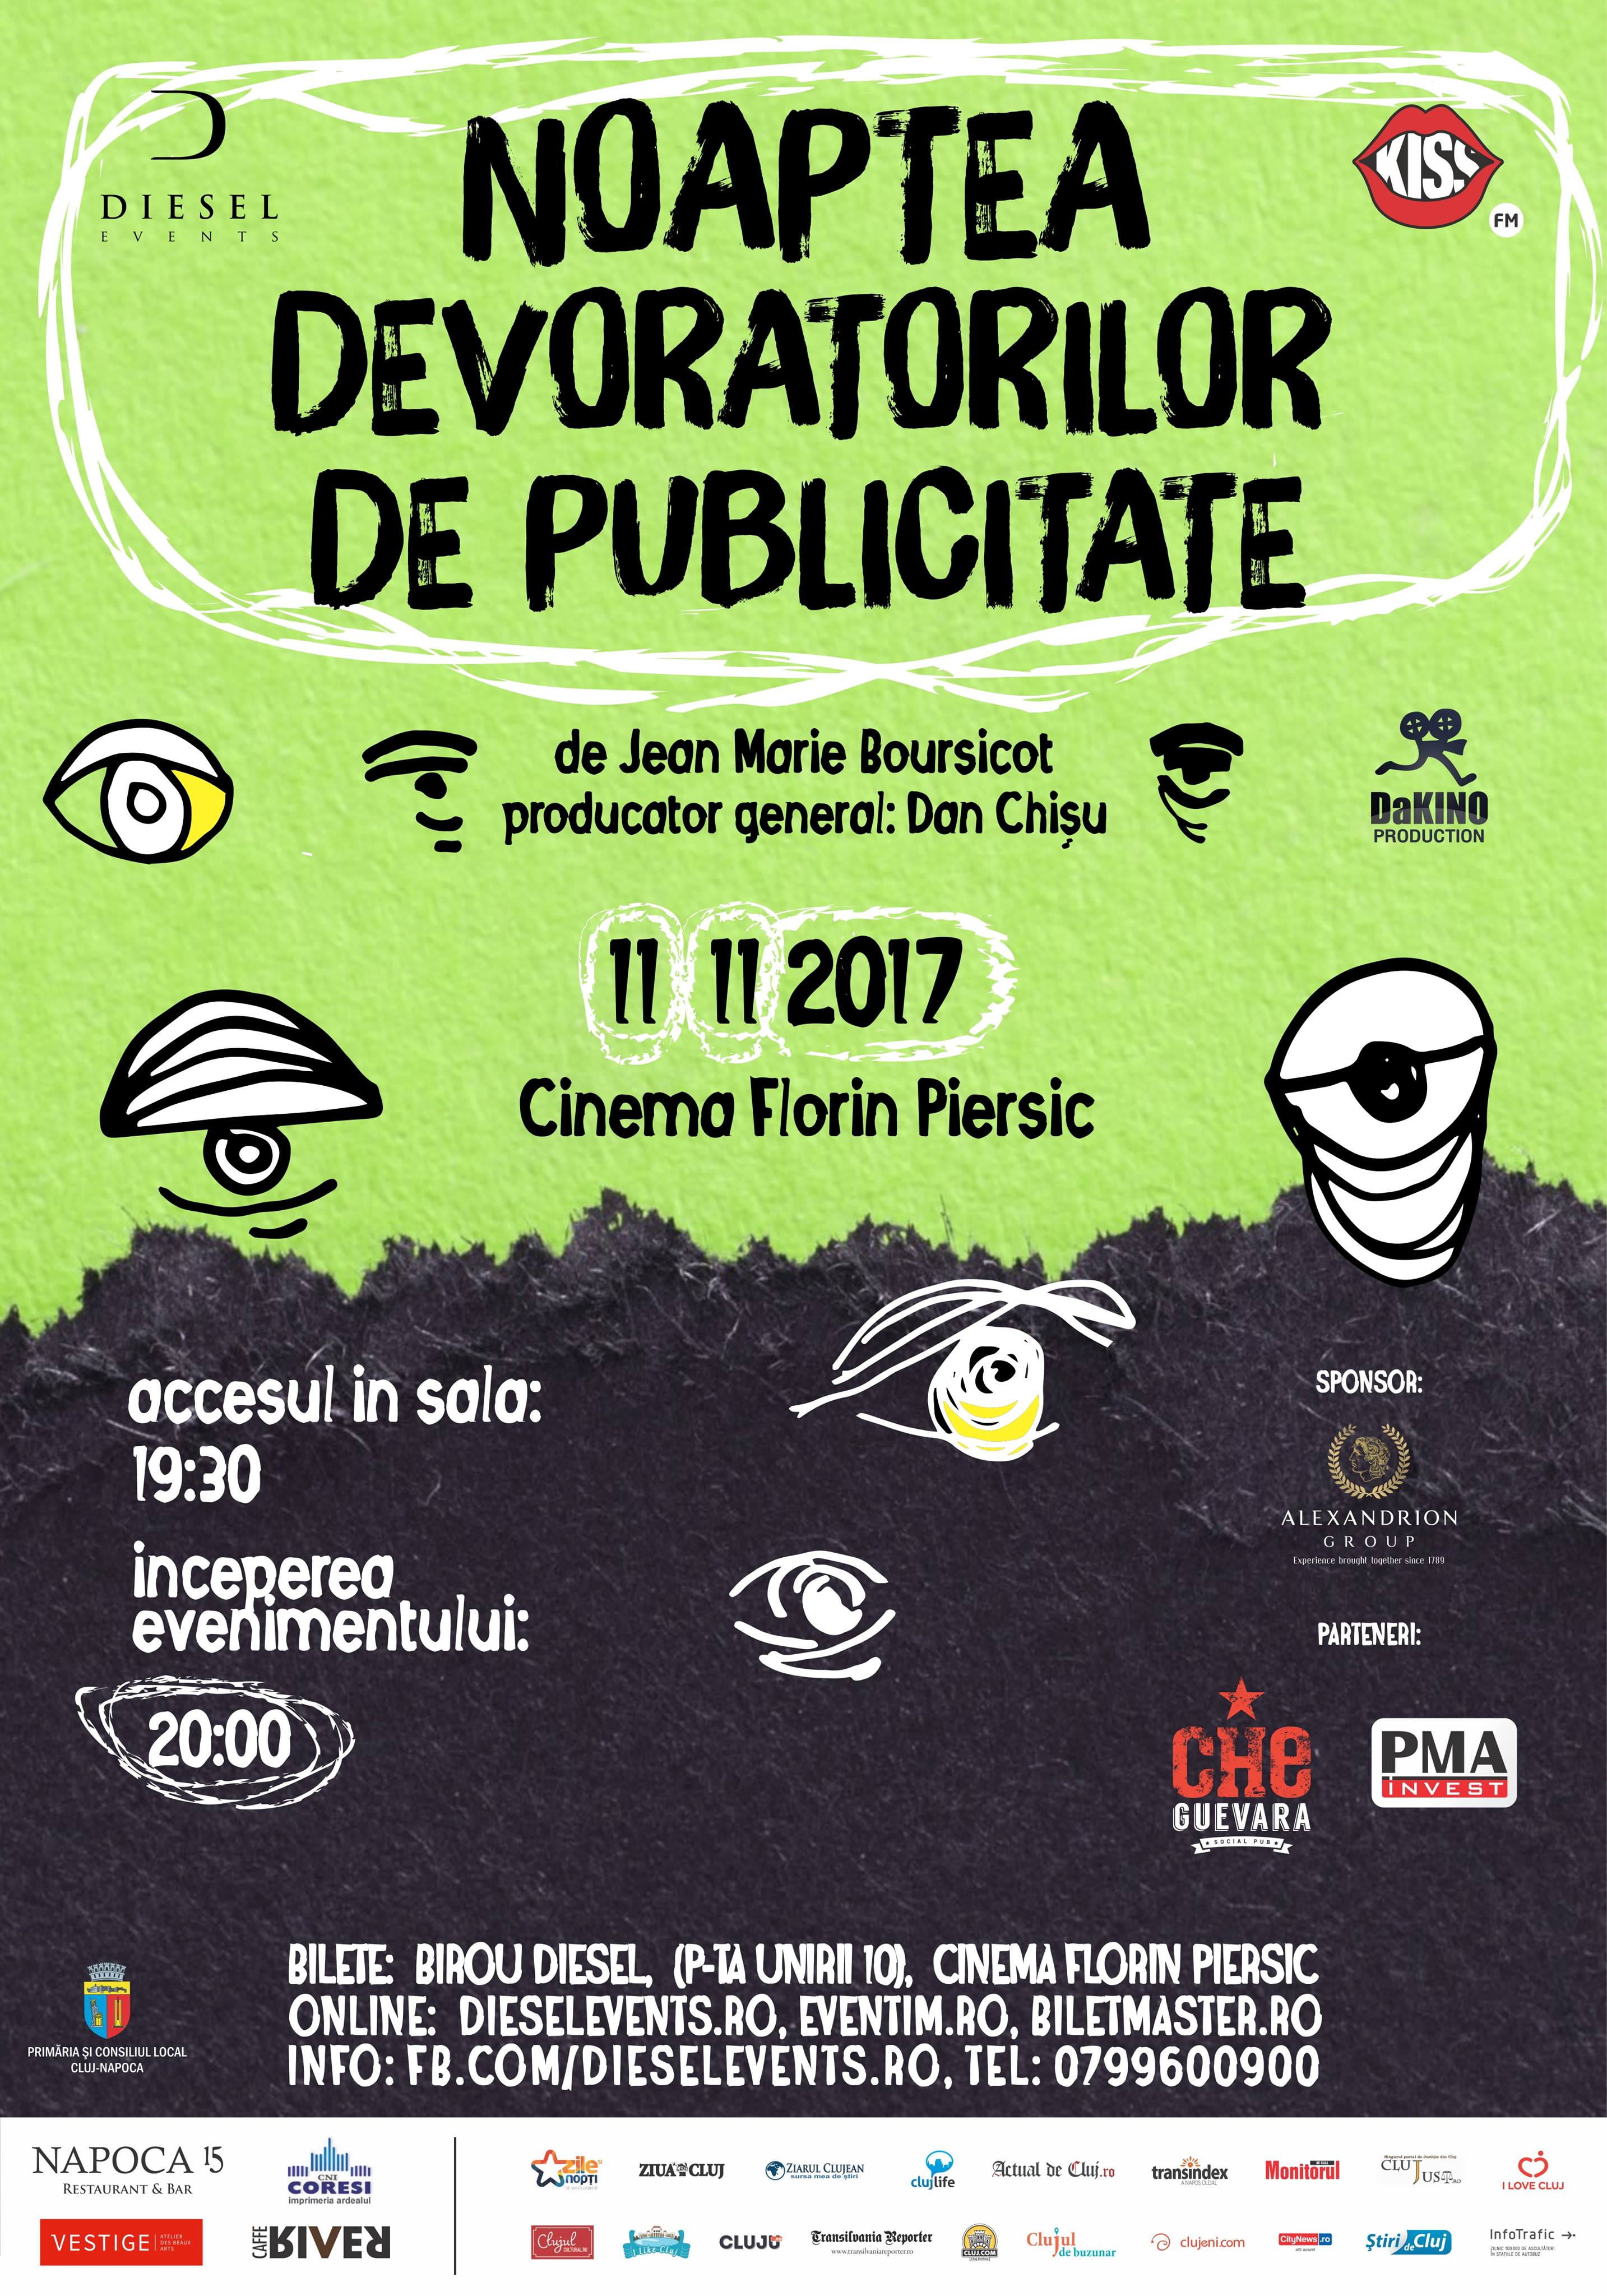 Noaptea Devoratorilor de Publicitate aduce și în acest an cele mai bune reclame la Cinema Florin Piersic din Cluj